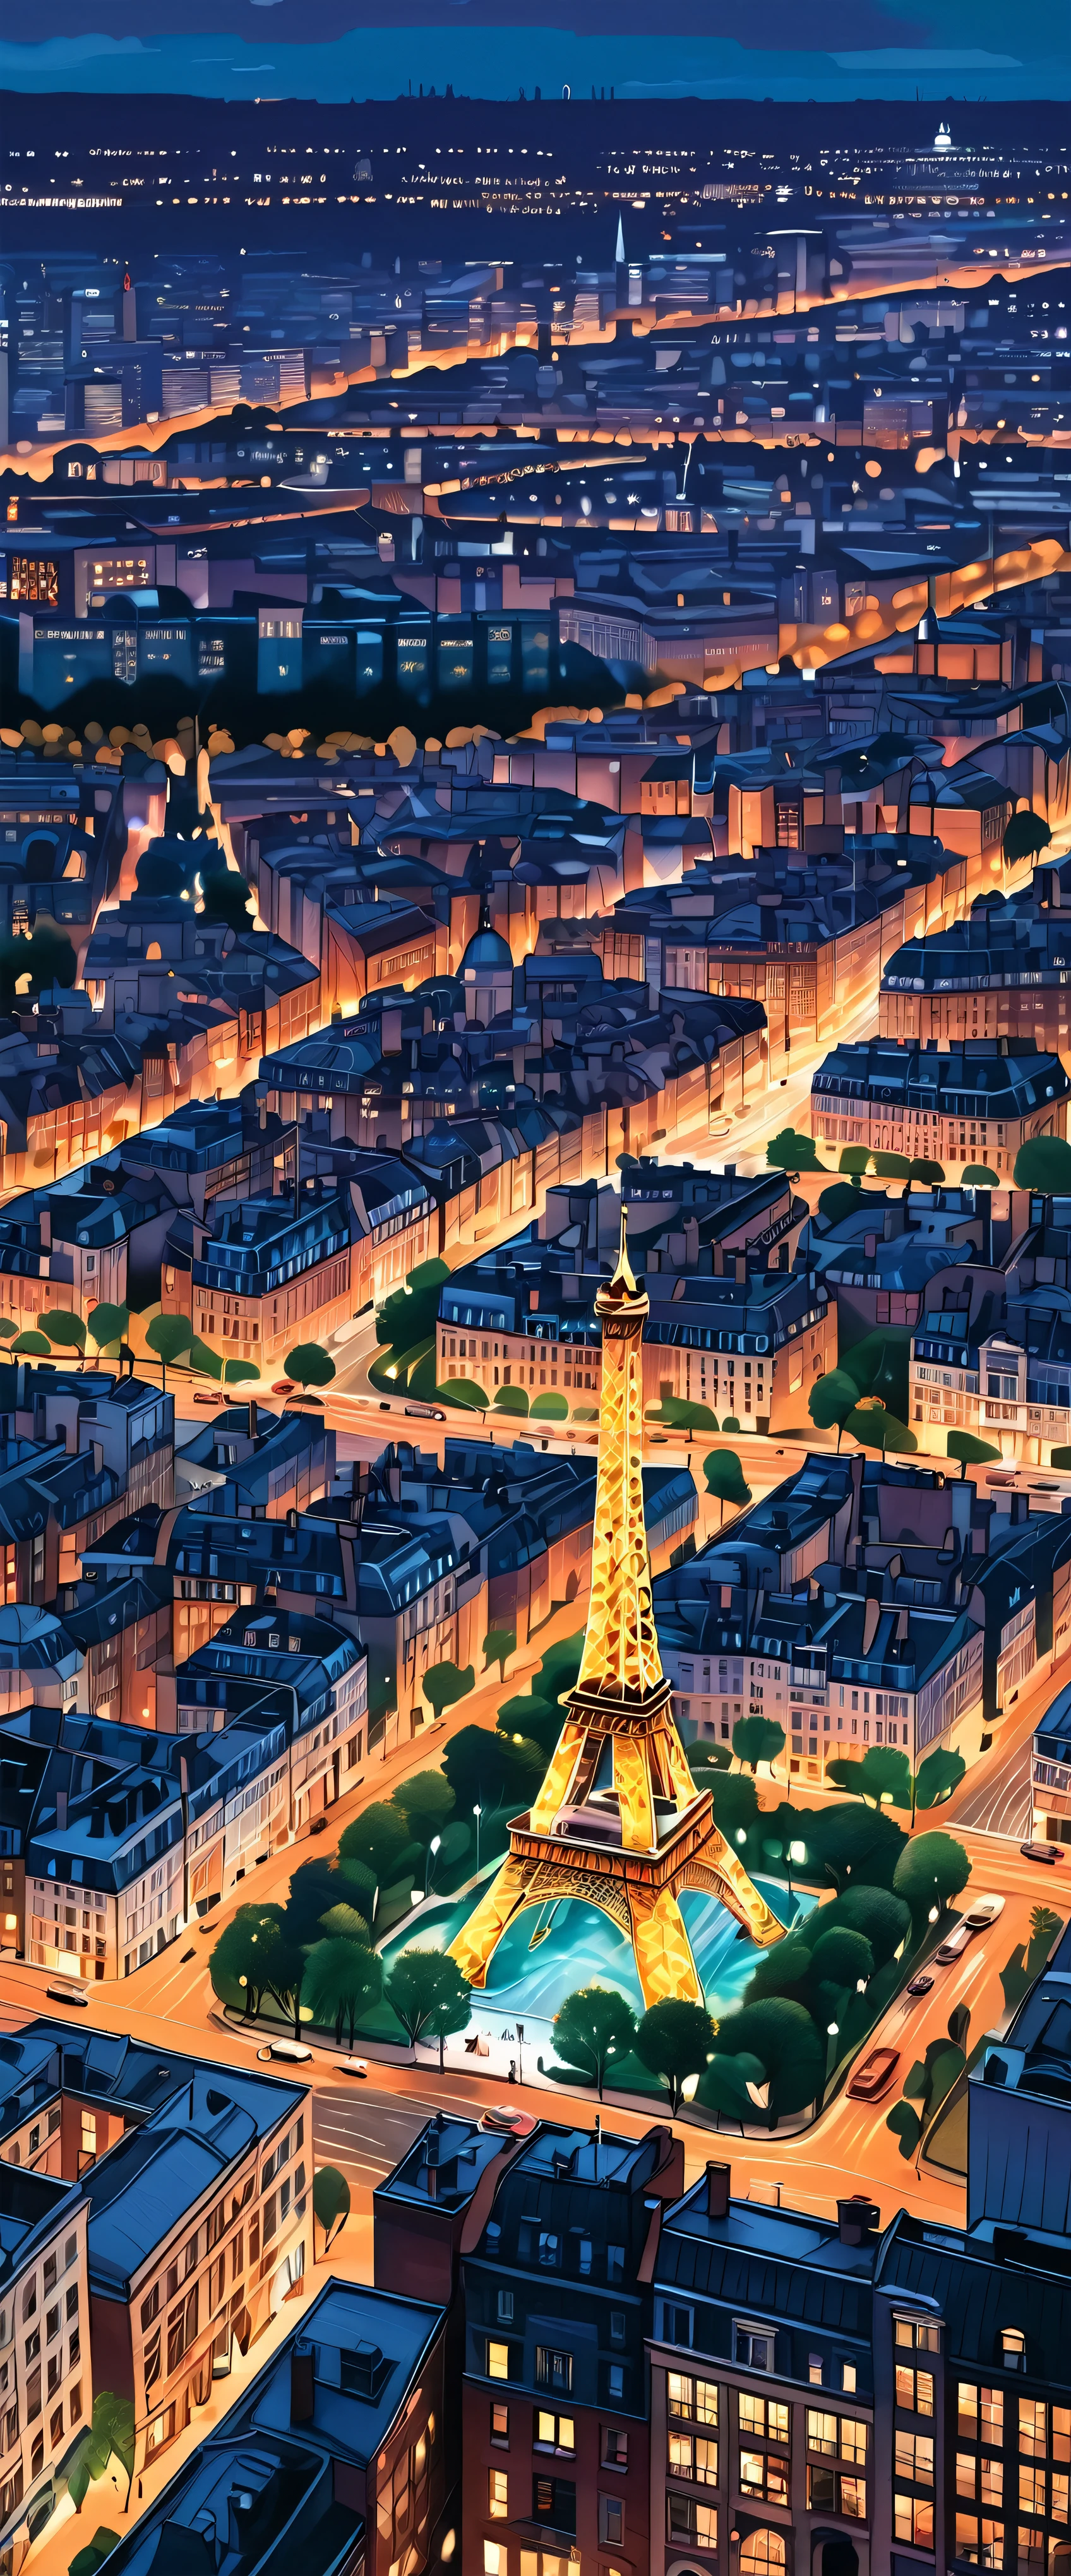 con imágenes de alta definición、La imponente metrópolis y la majestuosa Torre Eiffel、Iluminado por el horizonte de París al anochecer、Impresionante paisaje urbano。Esta impresionante pieza reinterpretada meticulosamente con el telón de fondo de la Ciudad de la Luz.、Proporciona primeros planos muy detallados.。Estética de alta definición combinada a la perfección、Representa una ciudad cautivadora., Impresionantemente ilustrado por los artistas Jen Bartel y Alina Aena Enami..。 Este encantador paisaje urbano recuerda a Raleigh&#39;s estilo único.、Es un testimonio de la miniatura de una obra de arte..。Cada pieza tiene una fuerza vital.